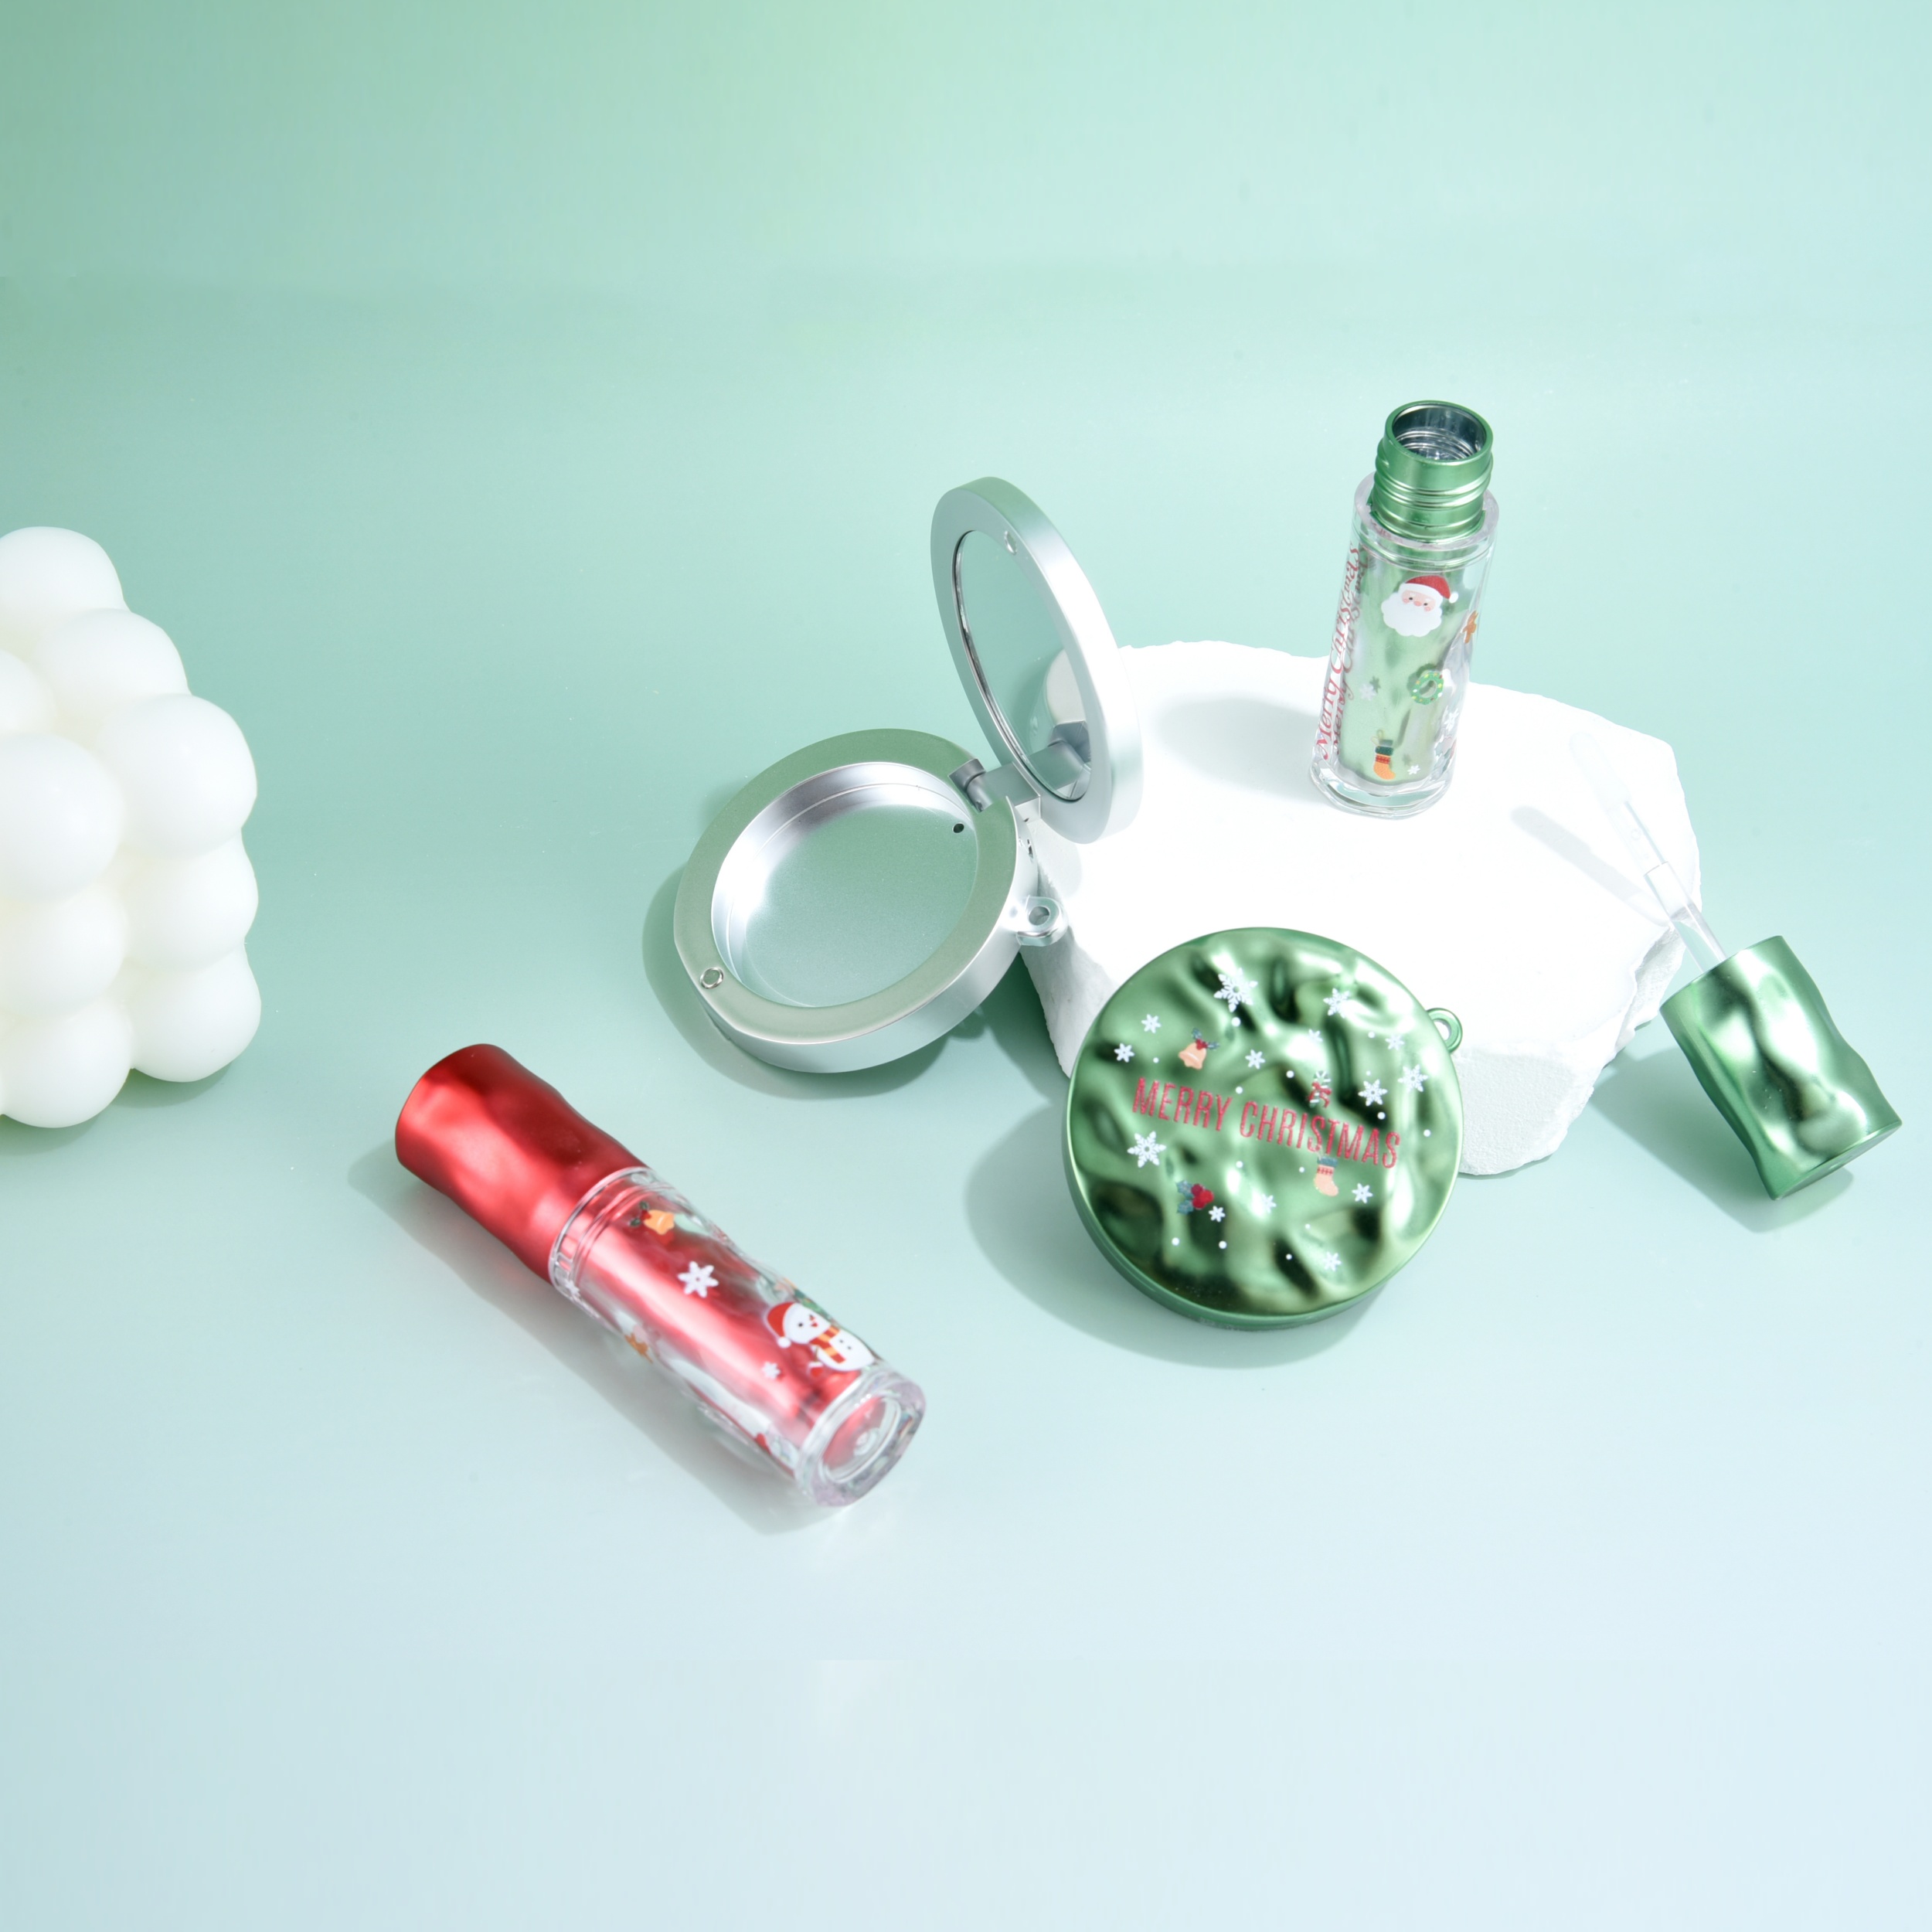 Set paketimi kozmetik i Krishtlindjeve me valë uji për kontejnerin magnetik të skuqjes dhe tuba për shkëlqim buzësh